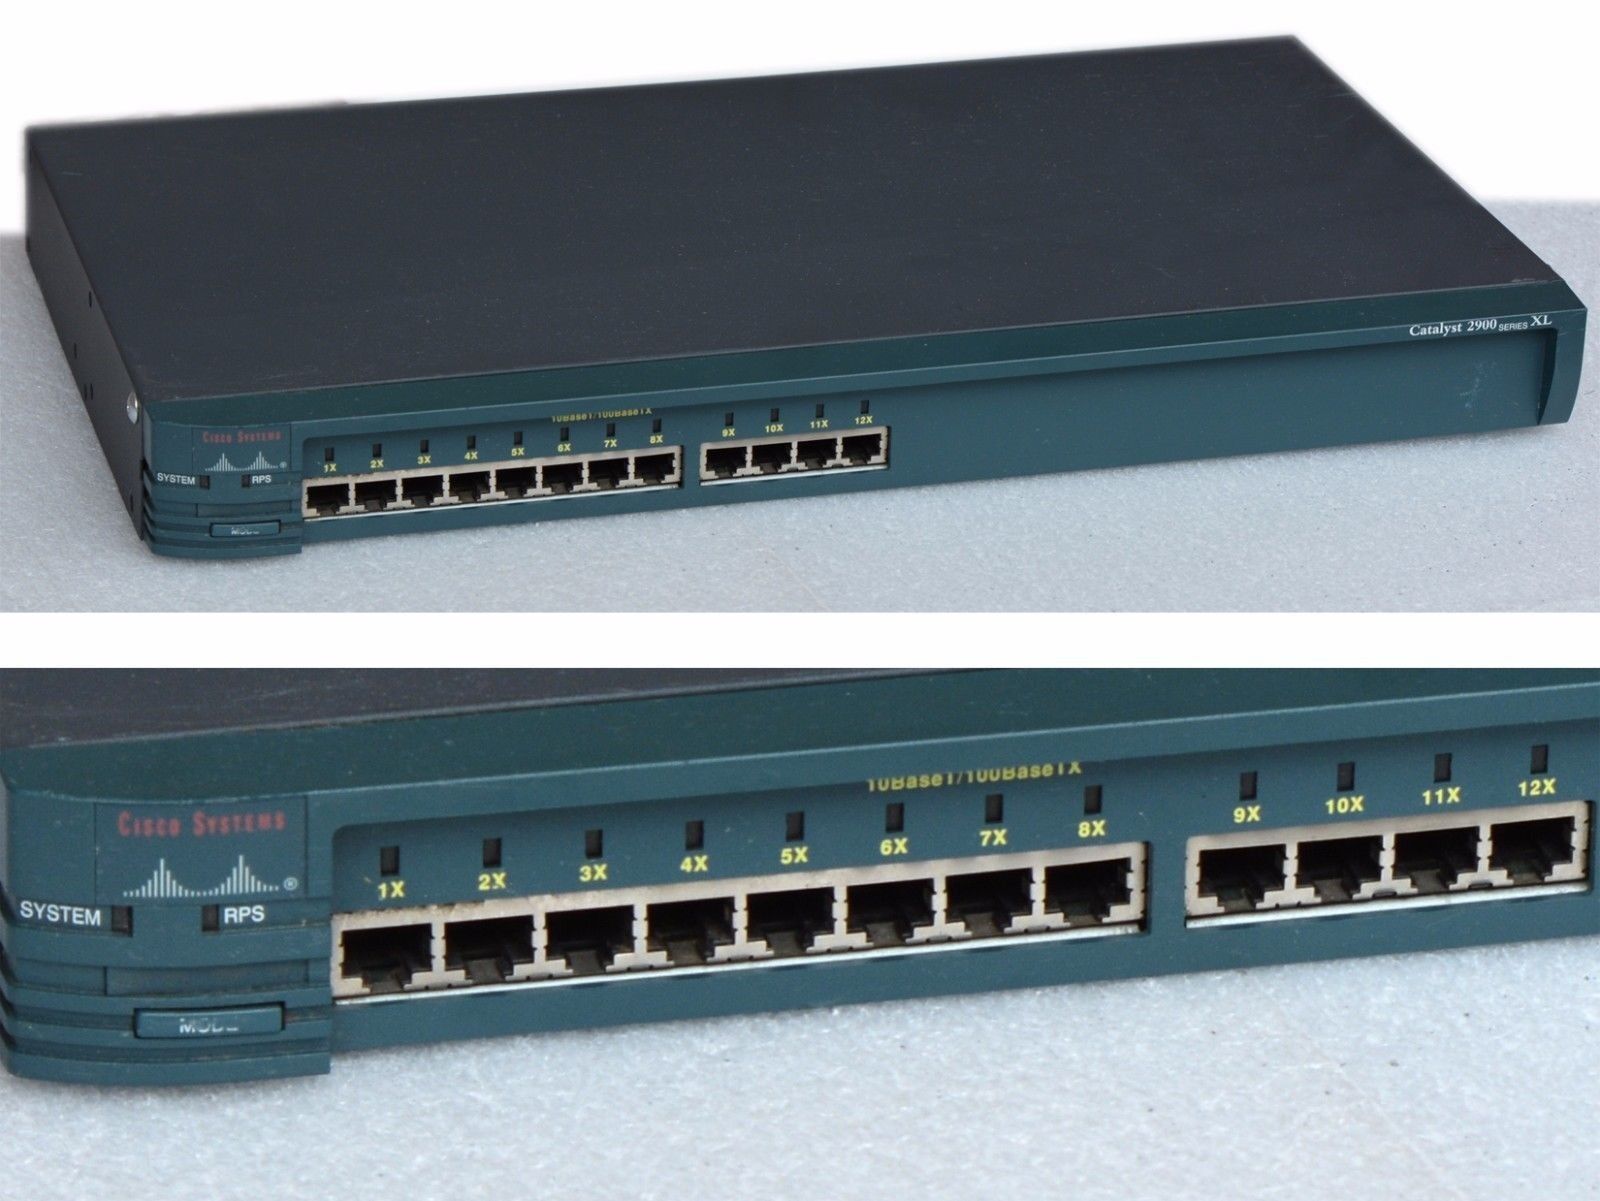 Cisco Switch Catalyst 2900 WS-C2912-XL-EN 12x Port 10/100 Network Switch Vl #B83